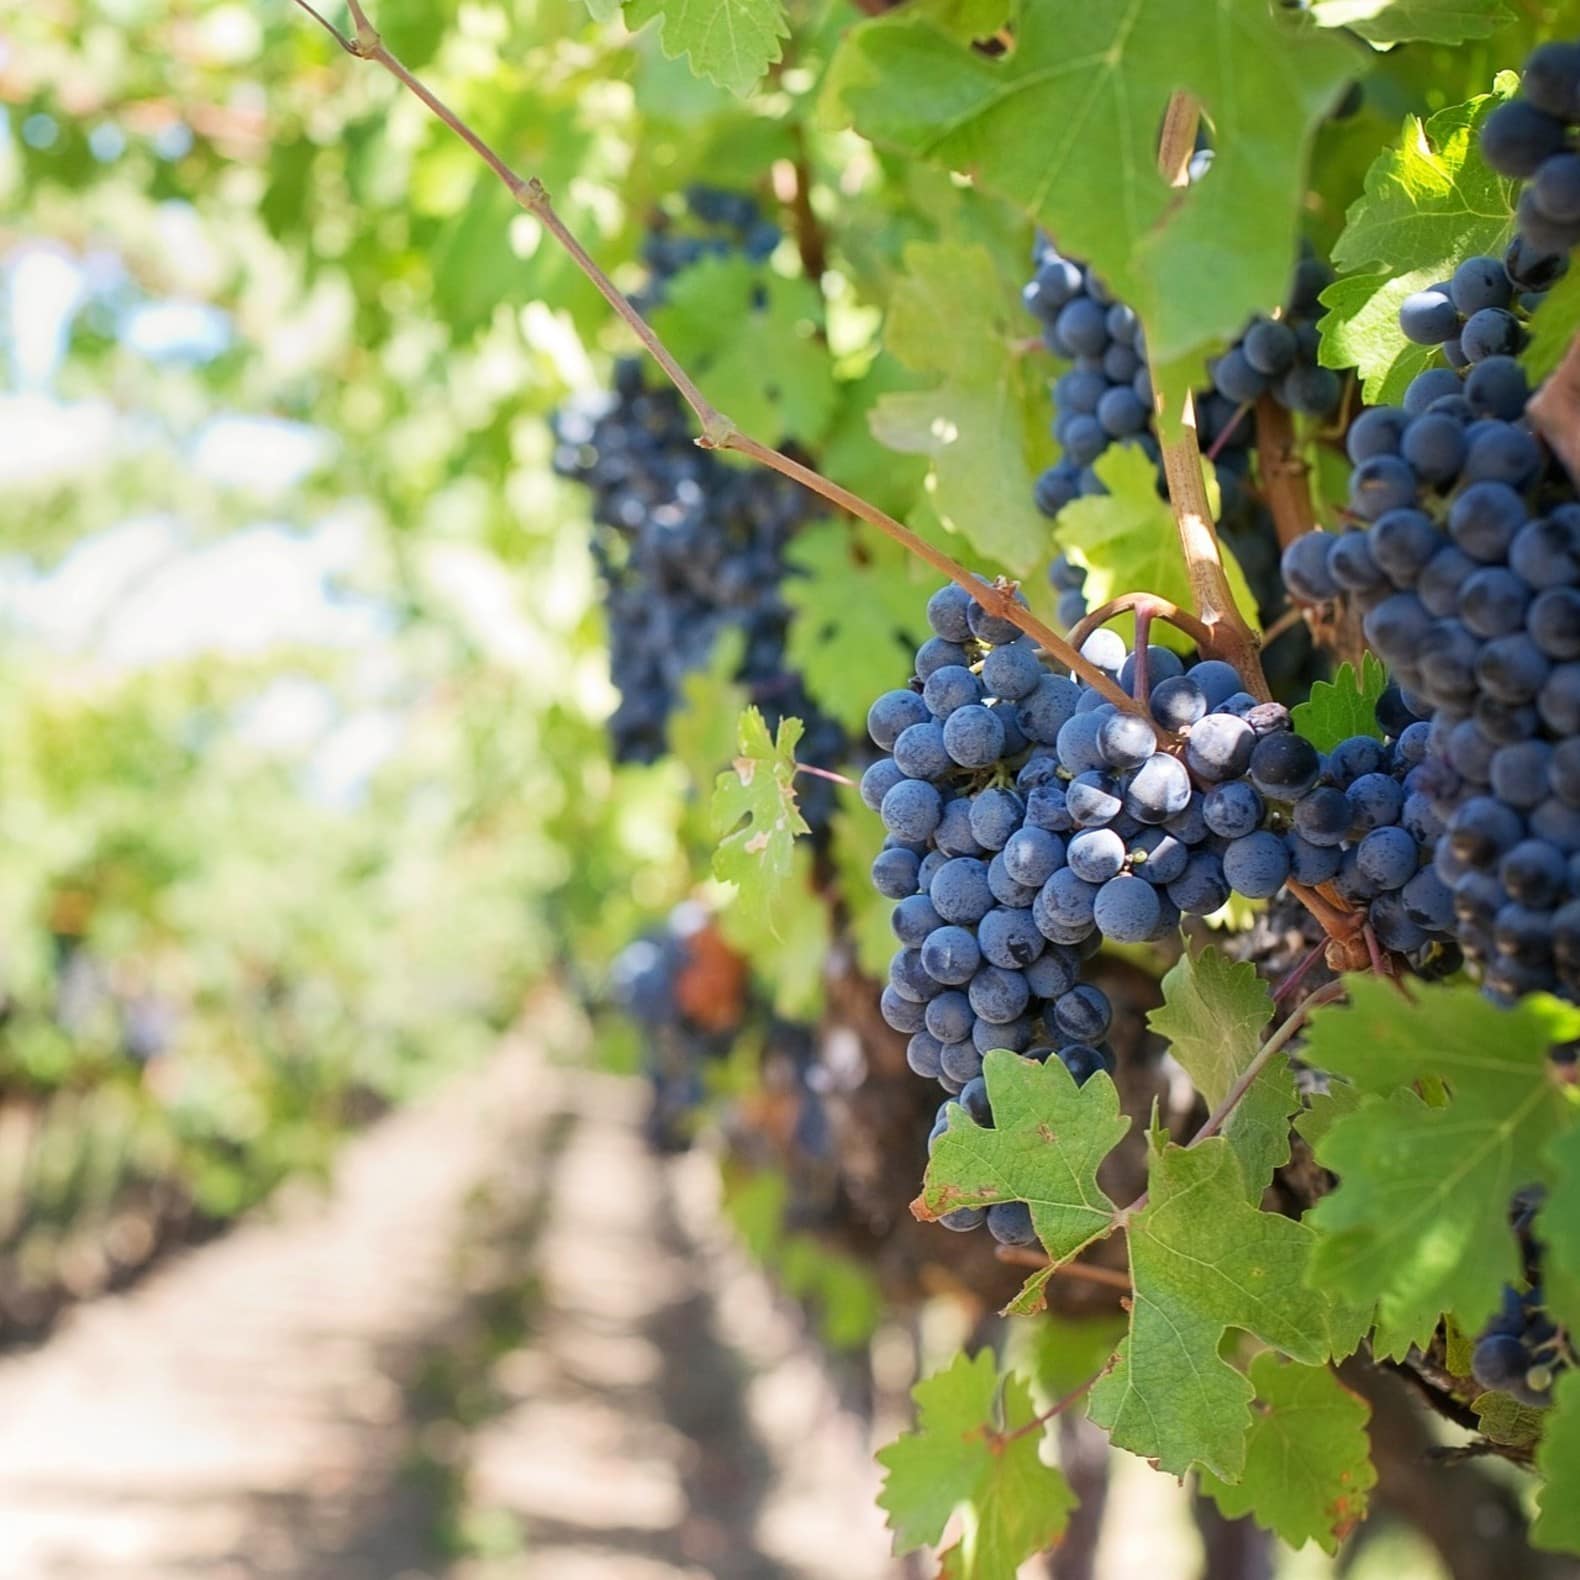 La région Rhône-Alpes possède des vignobles réputés, comme les Crozes-Hermitage, Saint-Joseph et Côte Rôtie.